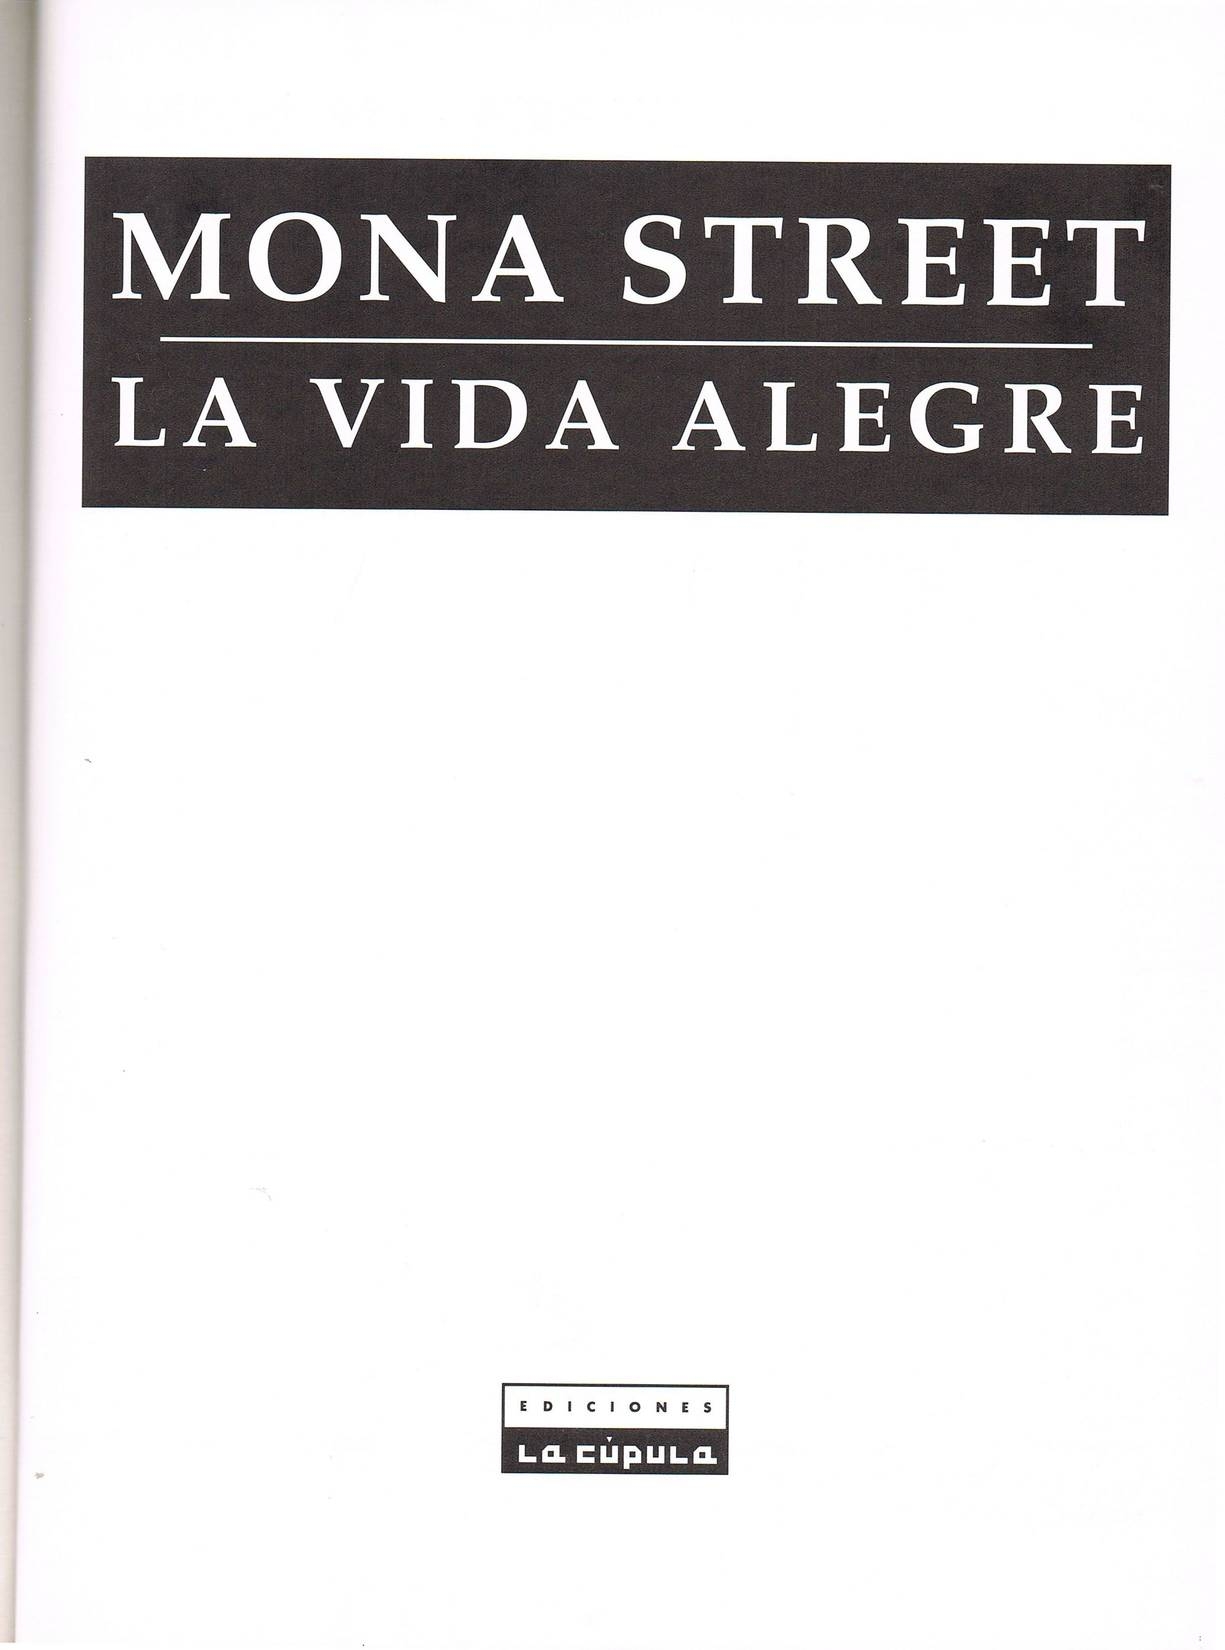 [Leone Frollo] - Coleccion X 086 - Mona Street - La vida alegre (ESP) 1